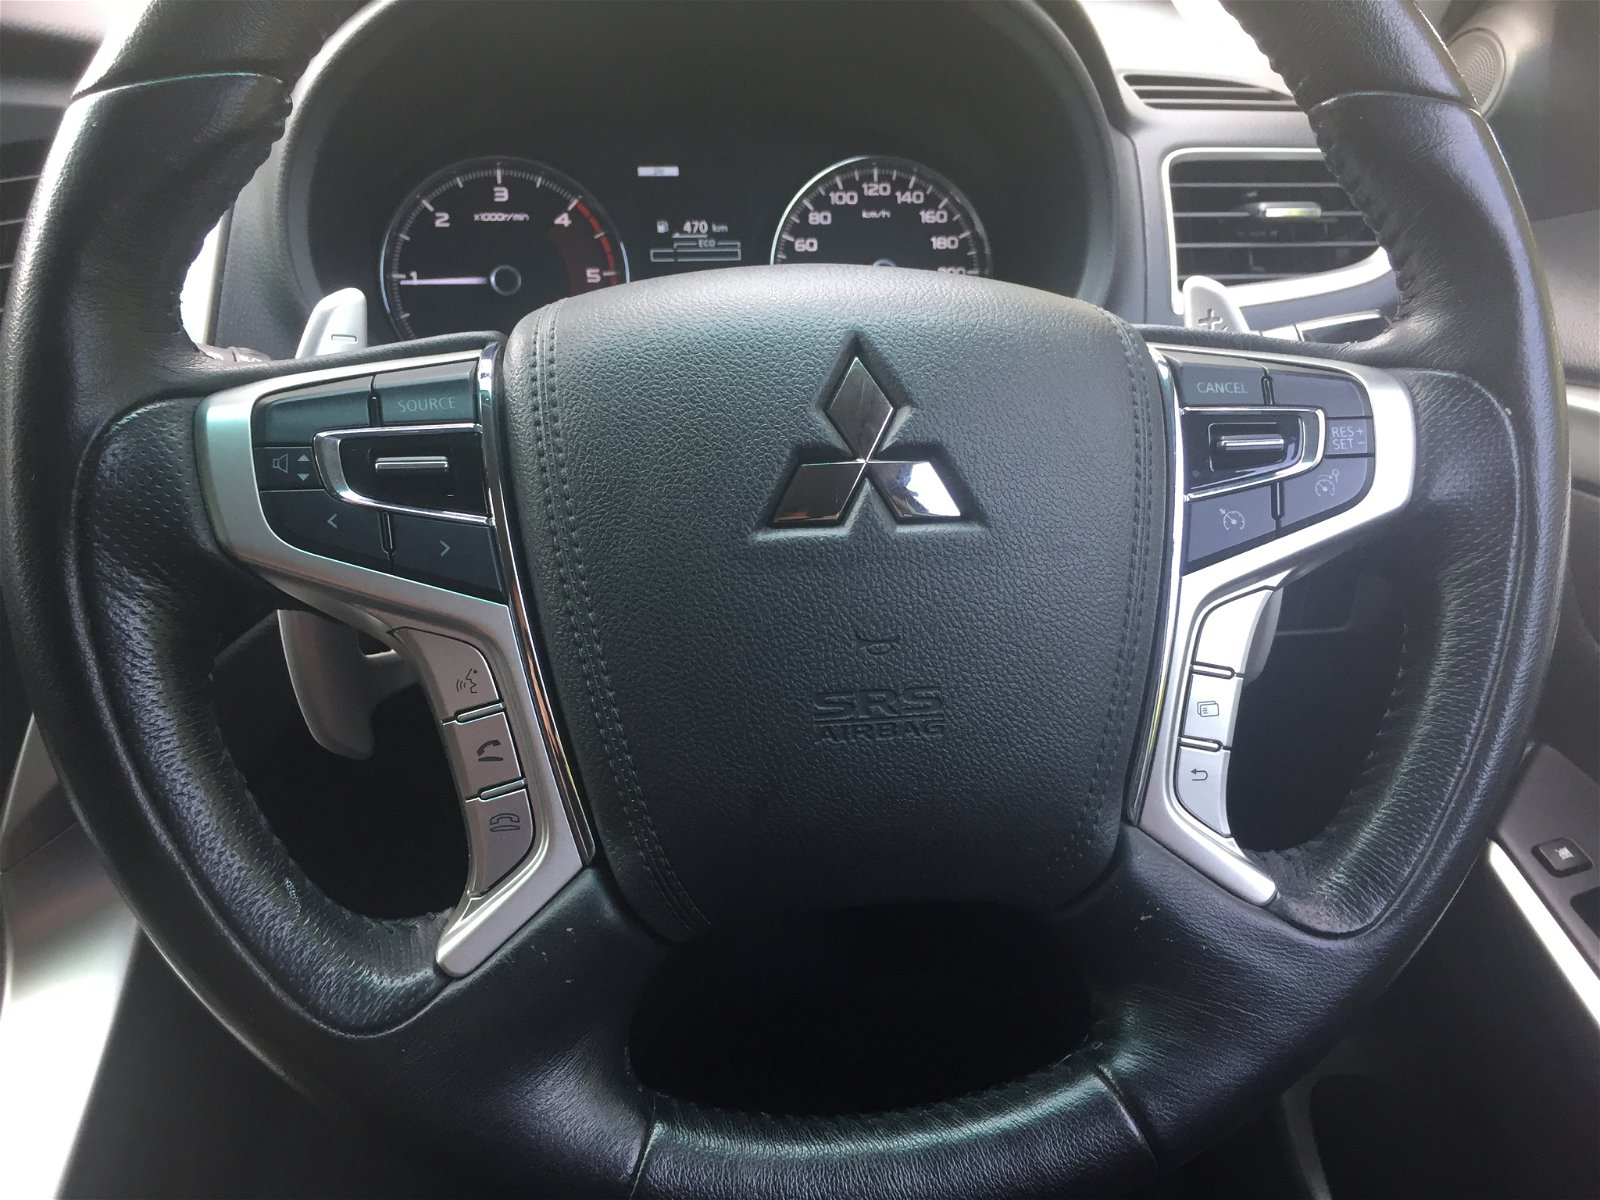 2016 Mitsubishi Pajero Sport XLS 4WD 2.4L DIESEL